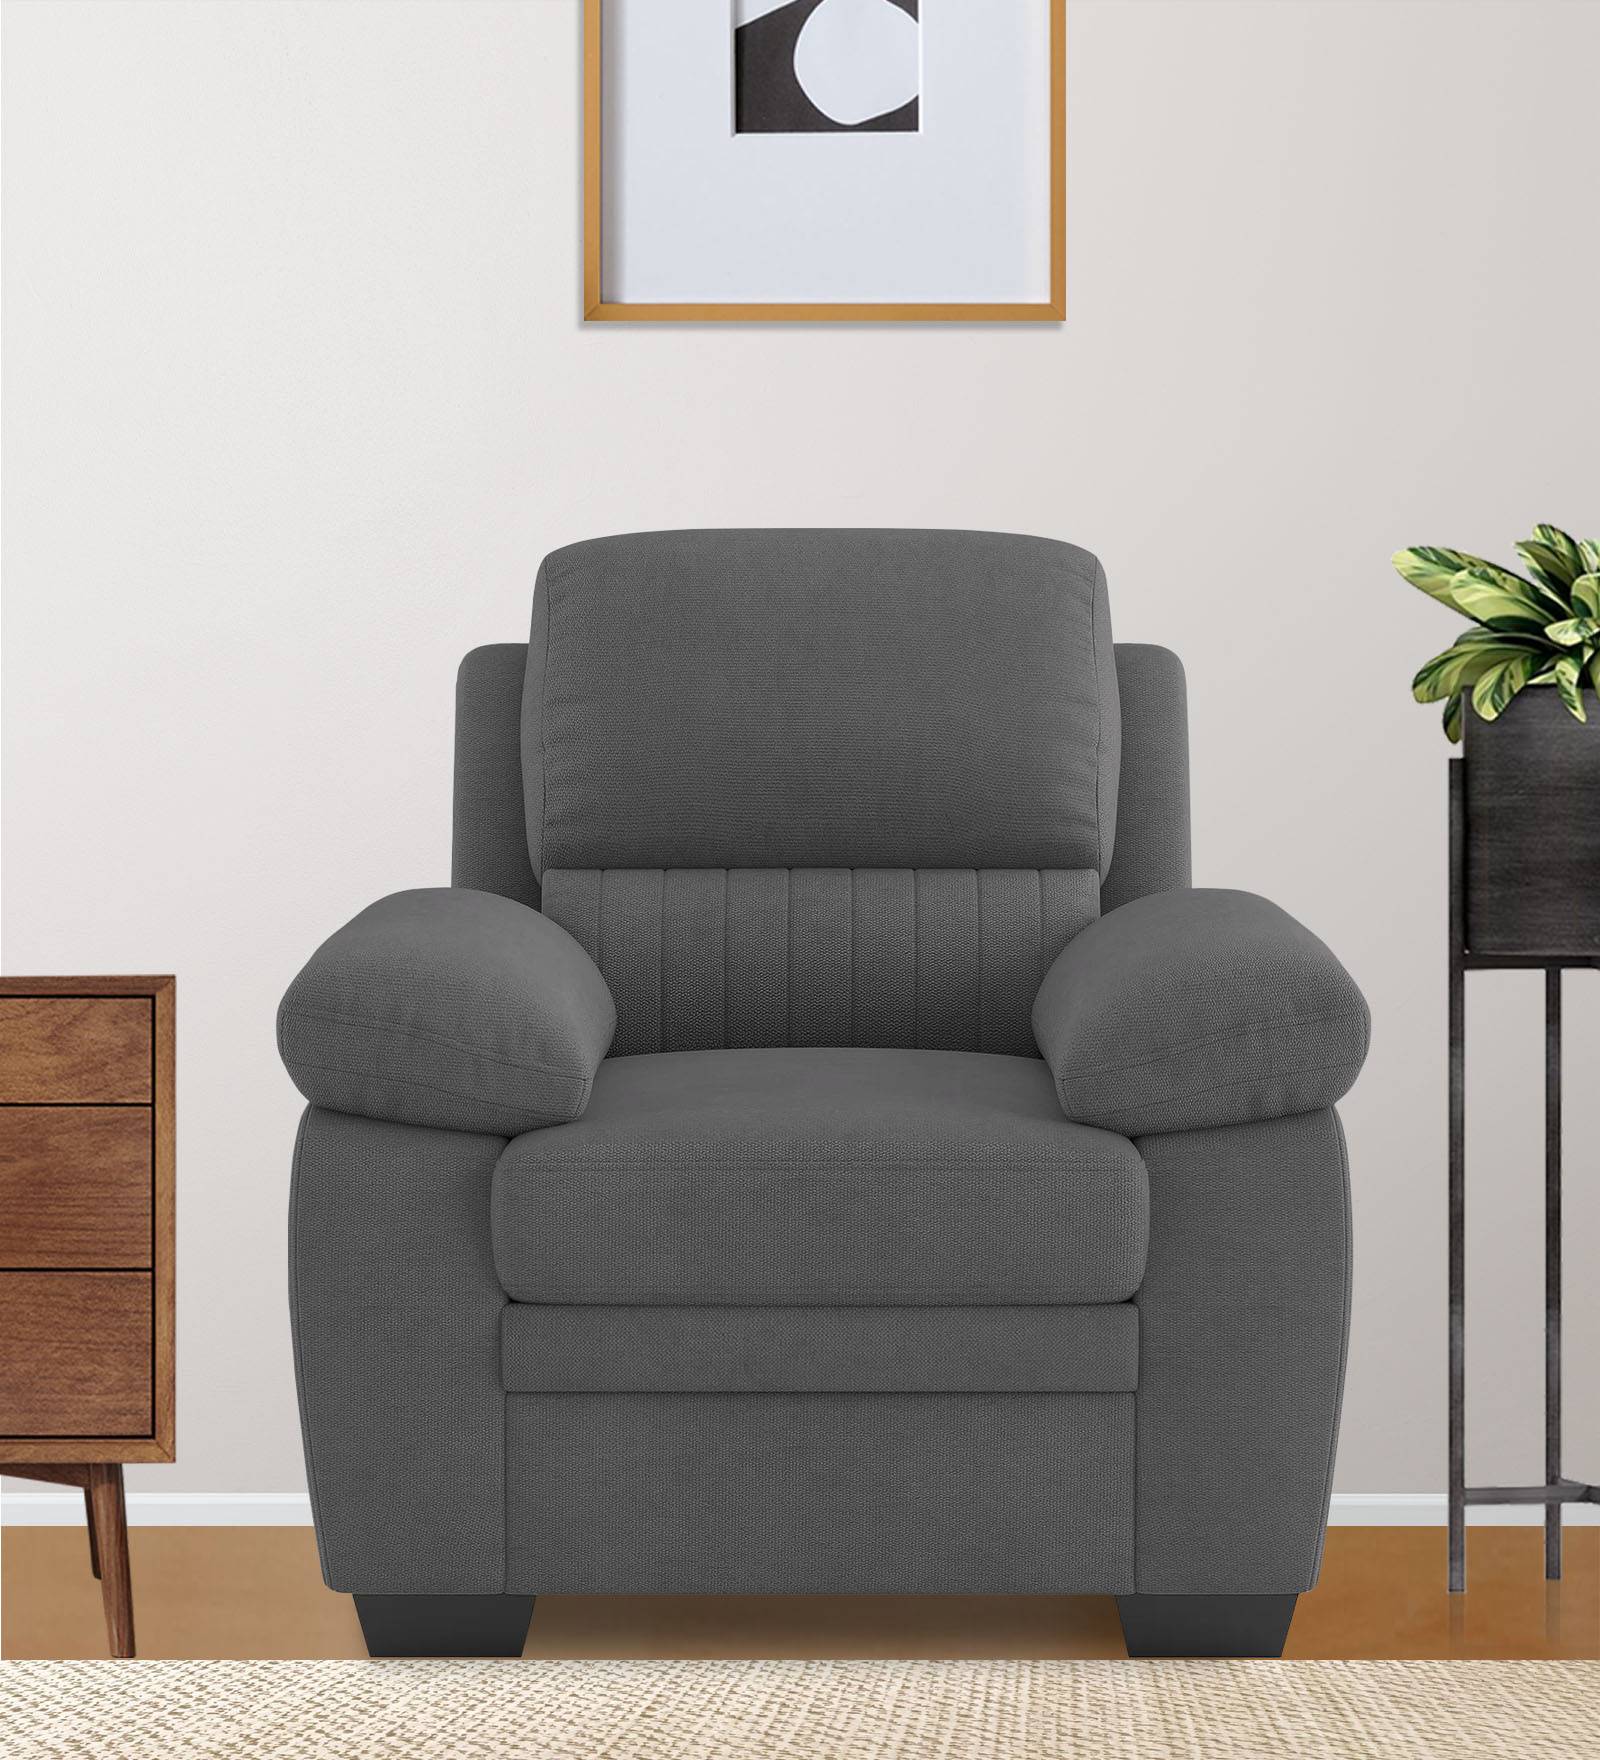 Miranda Velvet 1 Seater Sofa in Davy grey Colour